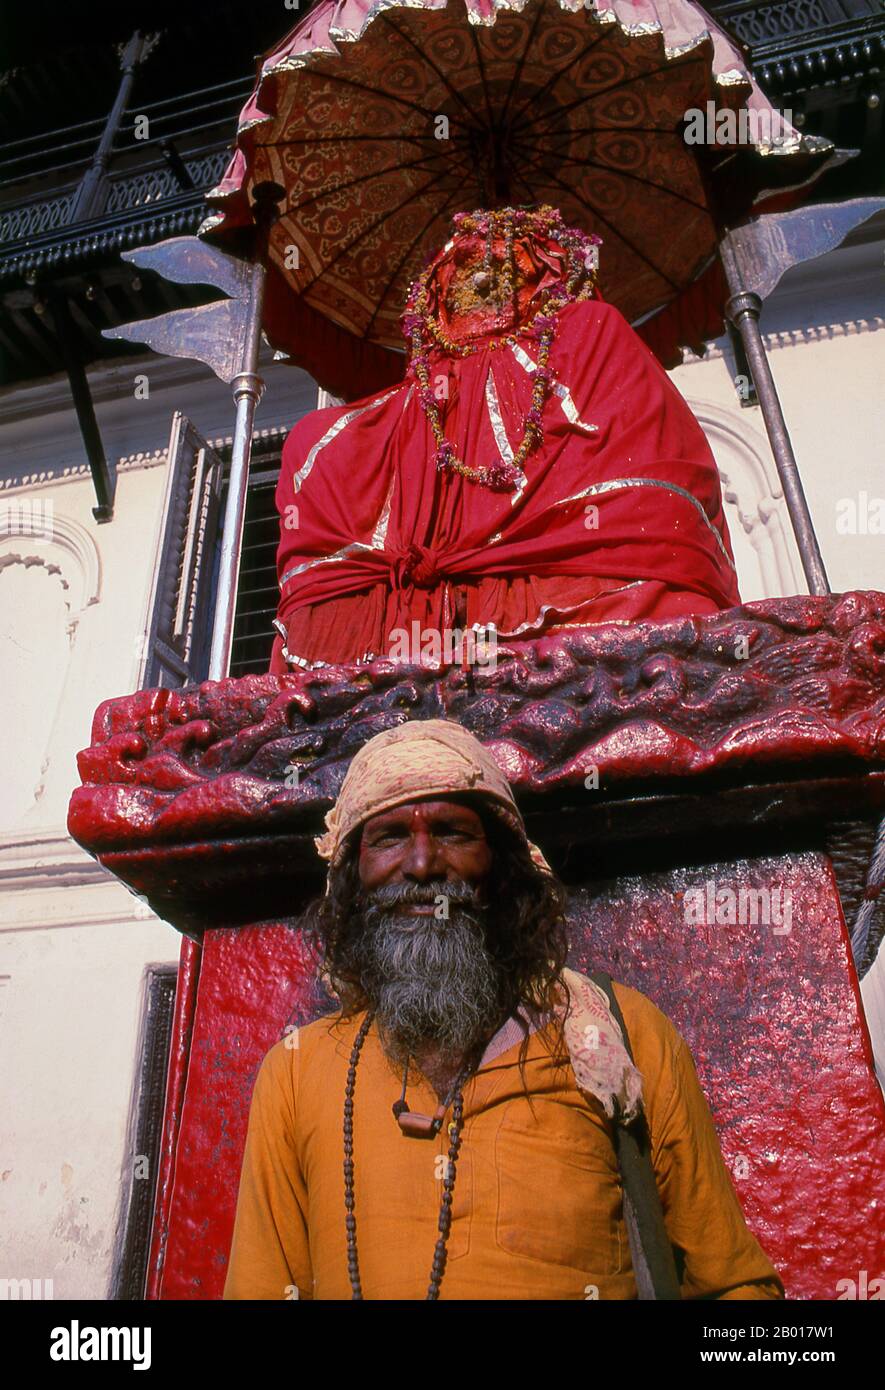 Nepal: Sadhu vor der Hanuman-Statue im Hanuman Dhoka Durbar (Hanuman Royal Palace), Kathmandu. Sie sind, verschiedentlich, als Sadhus (Heilige oder 'gute'), Yogis (asketische Praktizierende) bekannt, Fakiren (asketischer Sucher nach der Wahrheit) und Sannyasine (wandernde Bettelmönchen und Asketen). Sie sind die asketischen – und oft exzentrischen – Praktizierenden einer strengen Form des Hinduismus. Geschworen, irdische Wünsche abzuwerfen, entscheiden sich manche dafür, als Anchoriten in der Wildnis zu leben. Andere sind weniger pensioniert, vor allem in den Städten und Tempeln des nepalesischen Kathmandu-Tals. Stockfoto